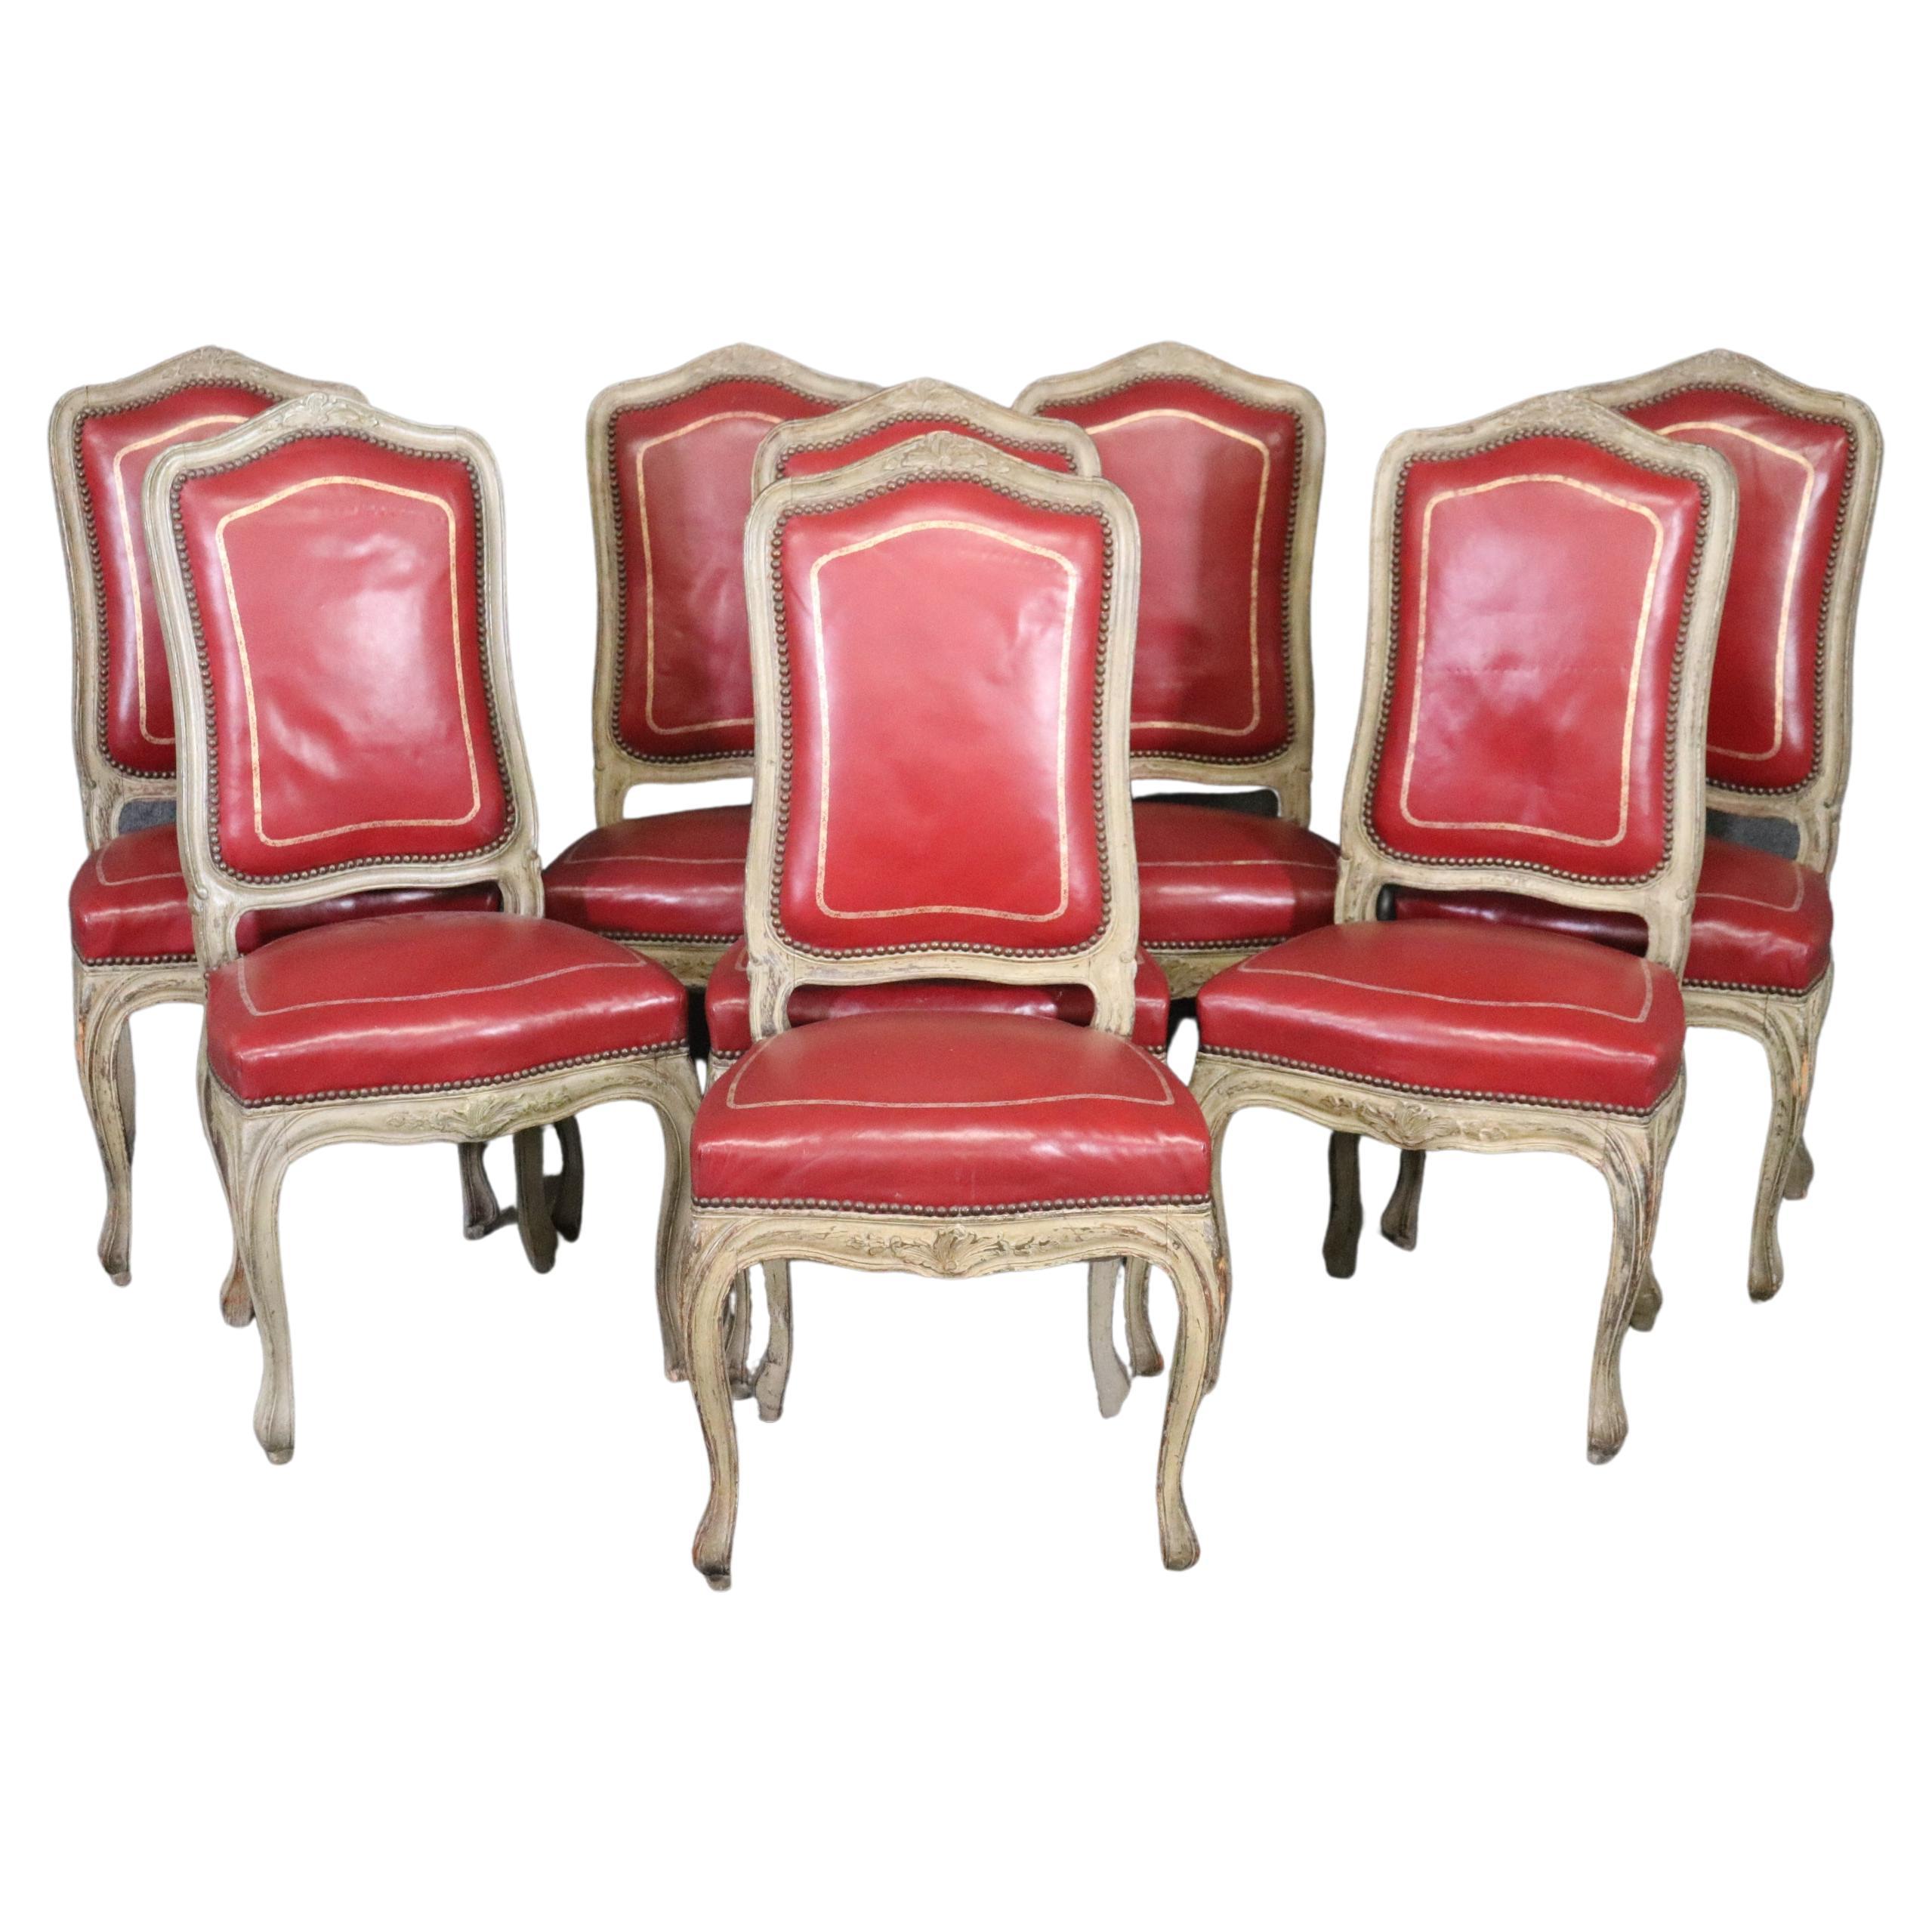 Ensemble raffiné de 8 chaises de salle à manger françaises peintes de style Louis XV en cuir rouge embossé or